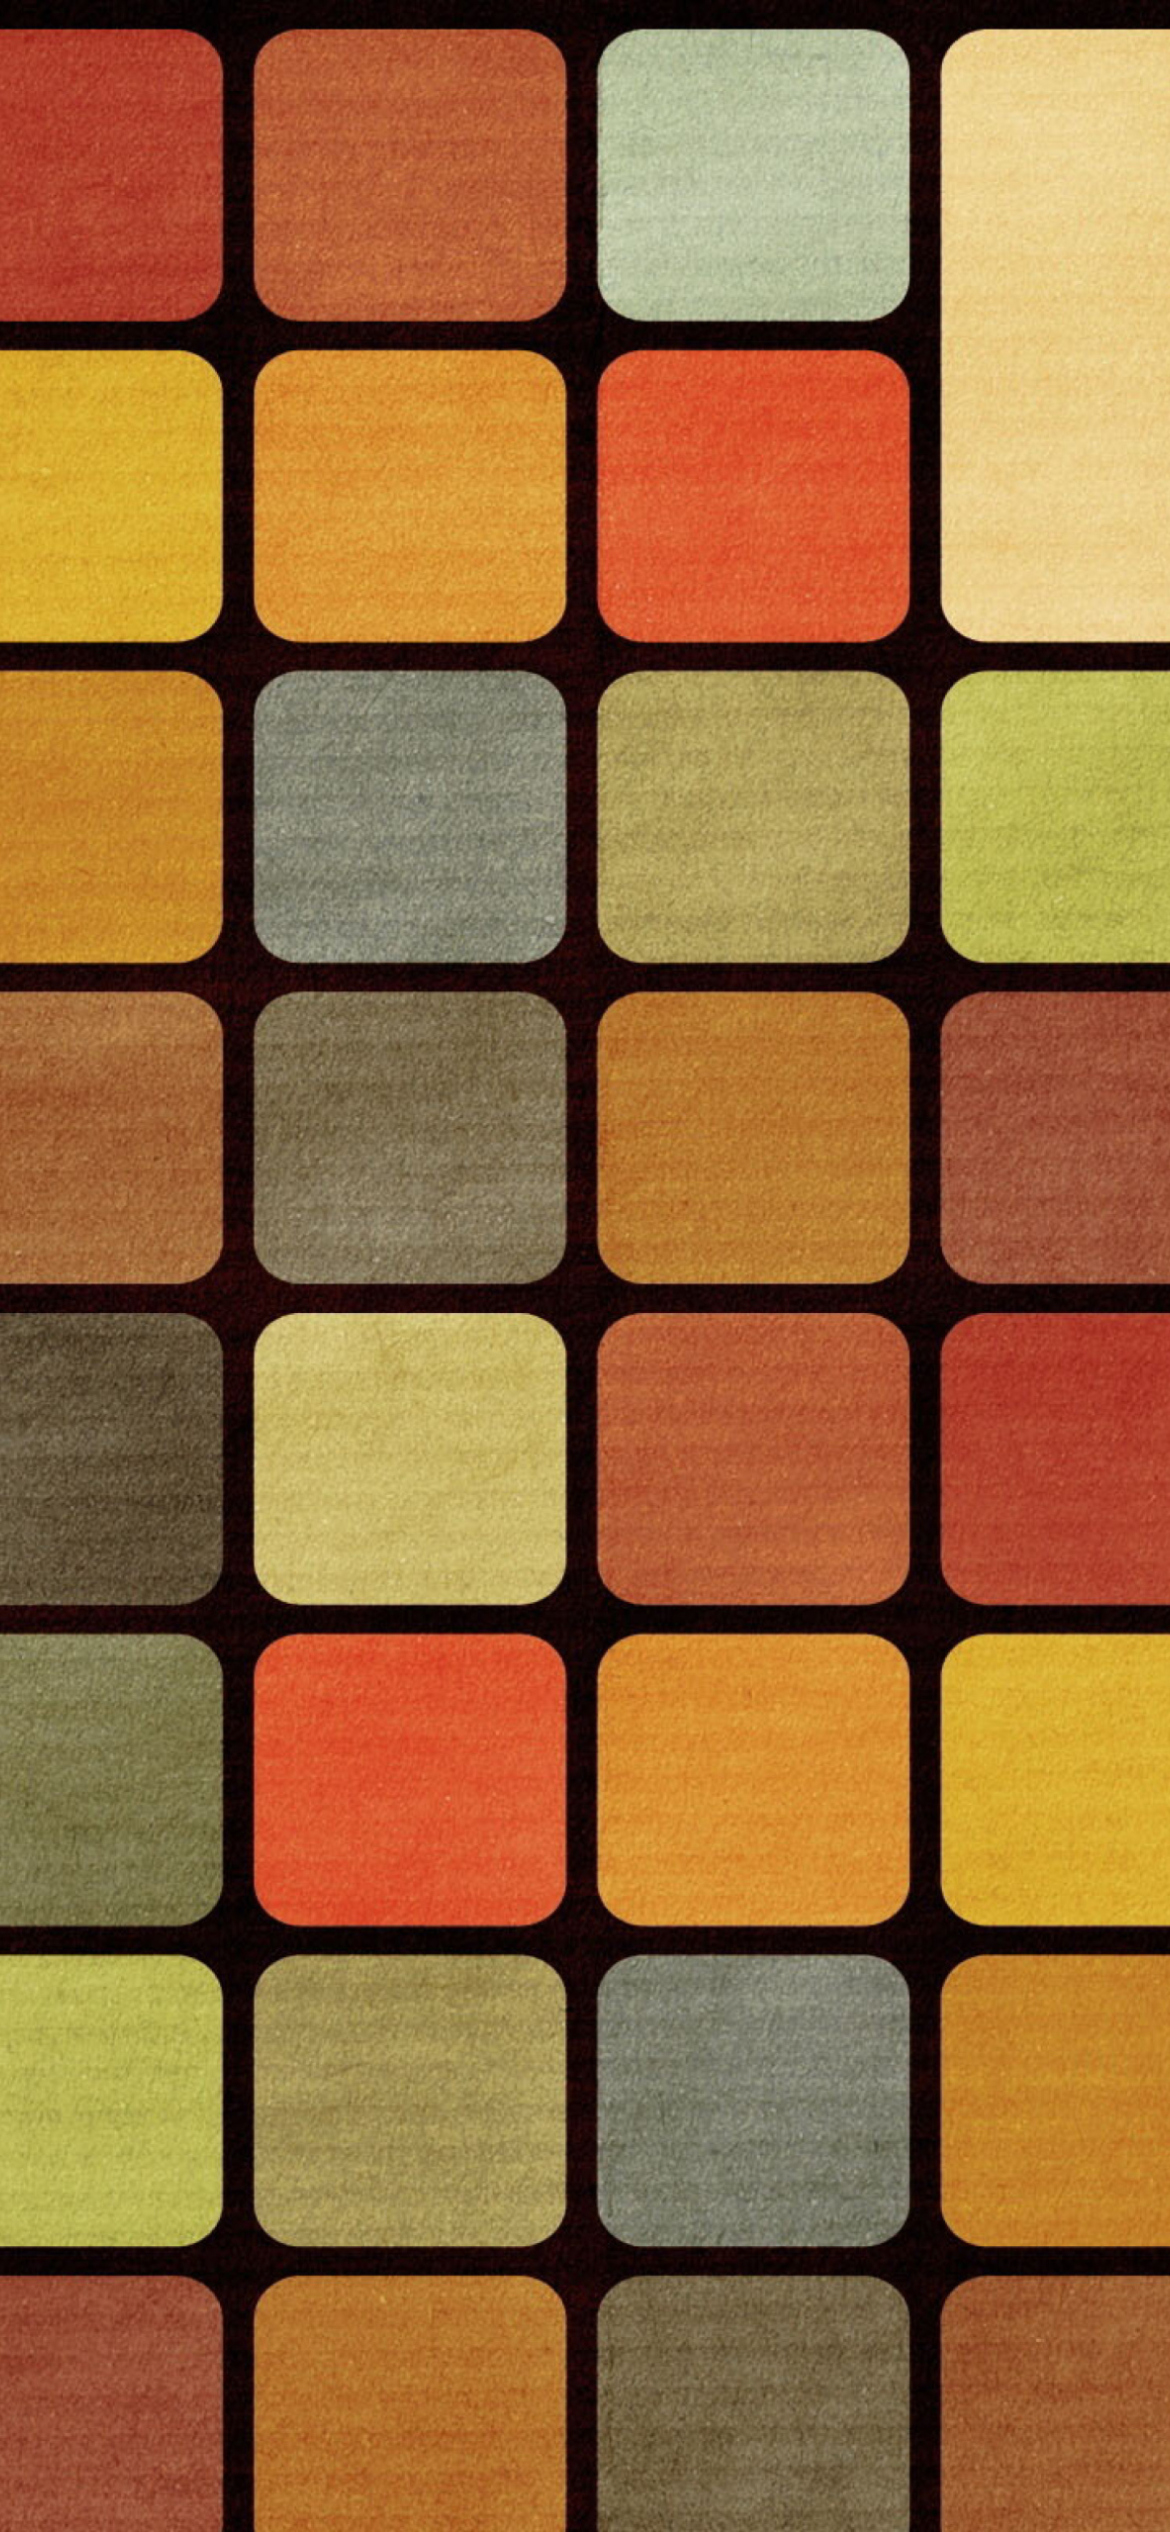 Rubiks Cube Squares Retro wallpaper 1170x2532